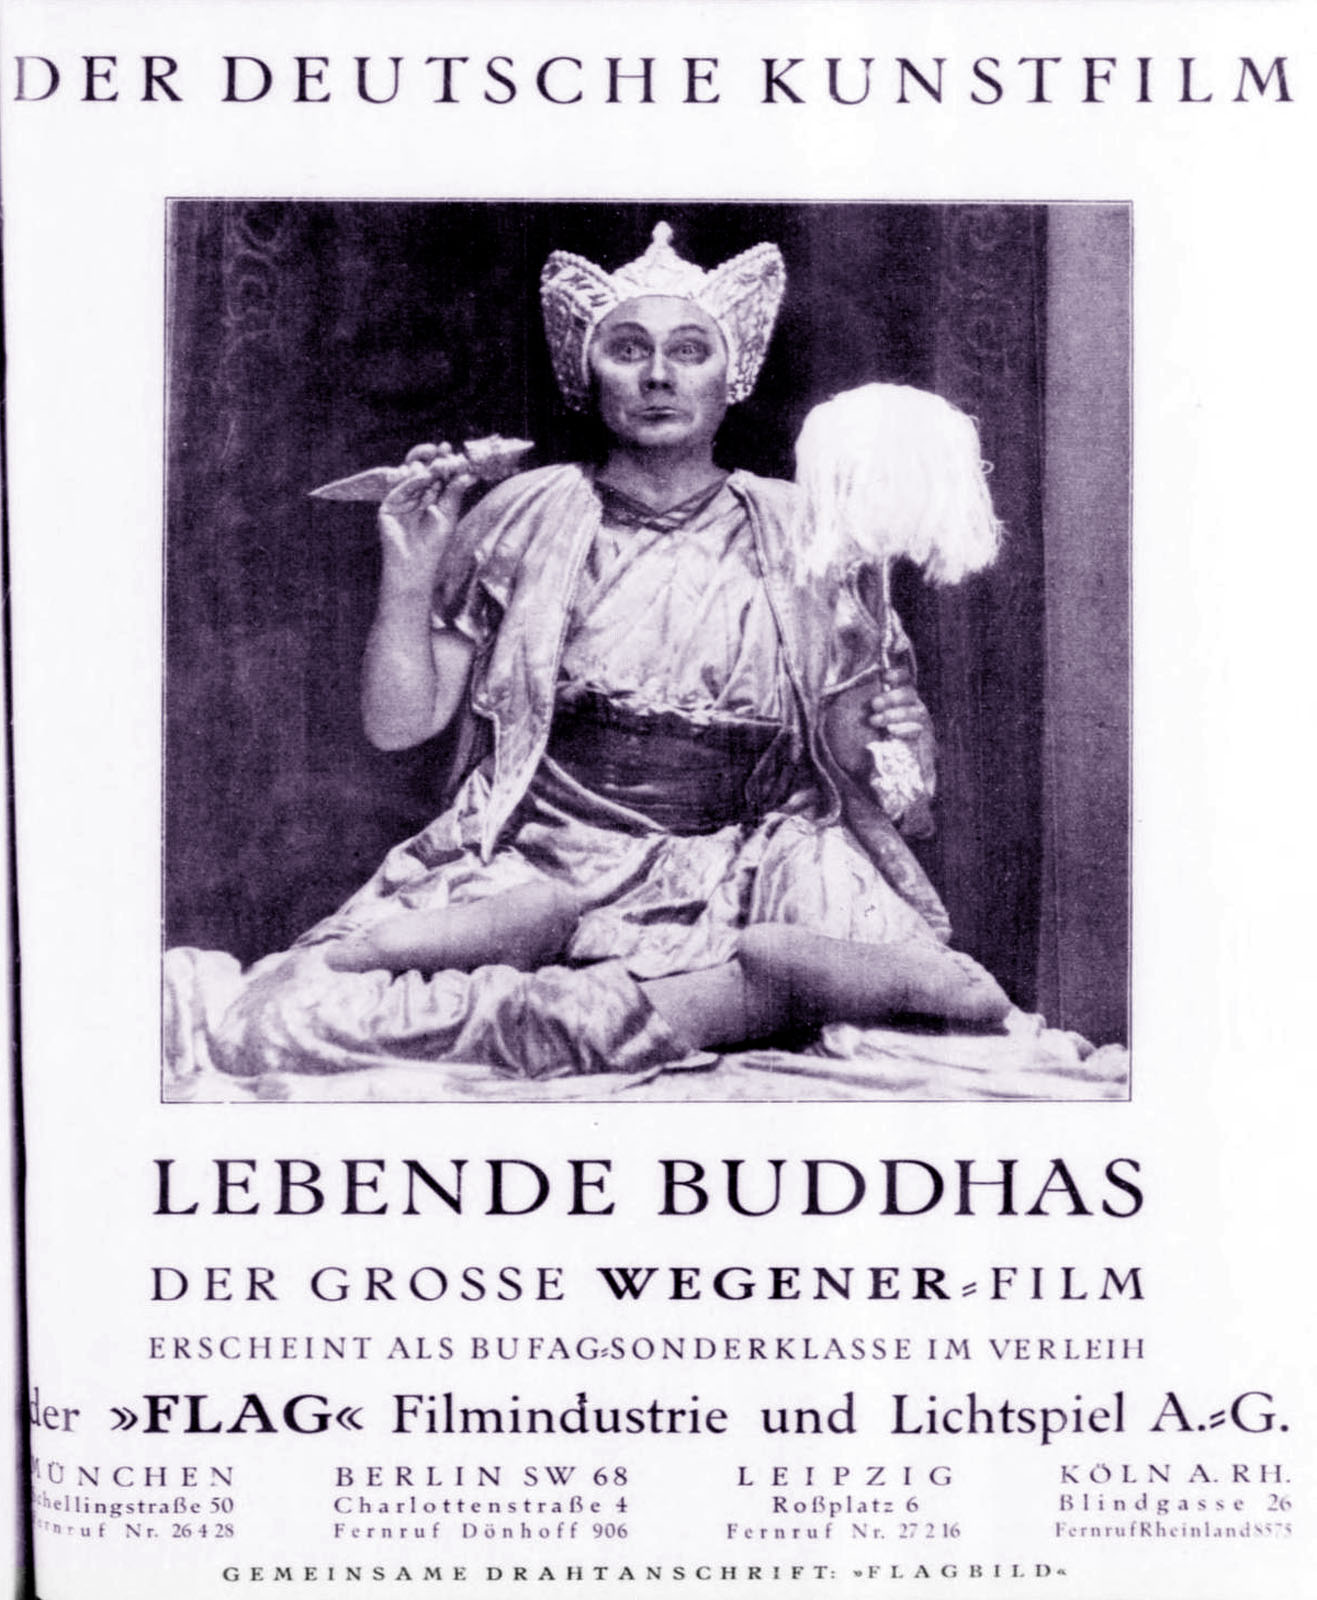 LEBENDE BUDDHAS